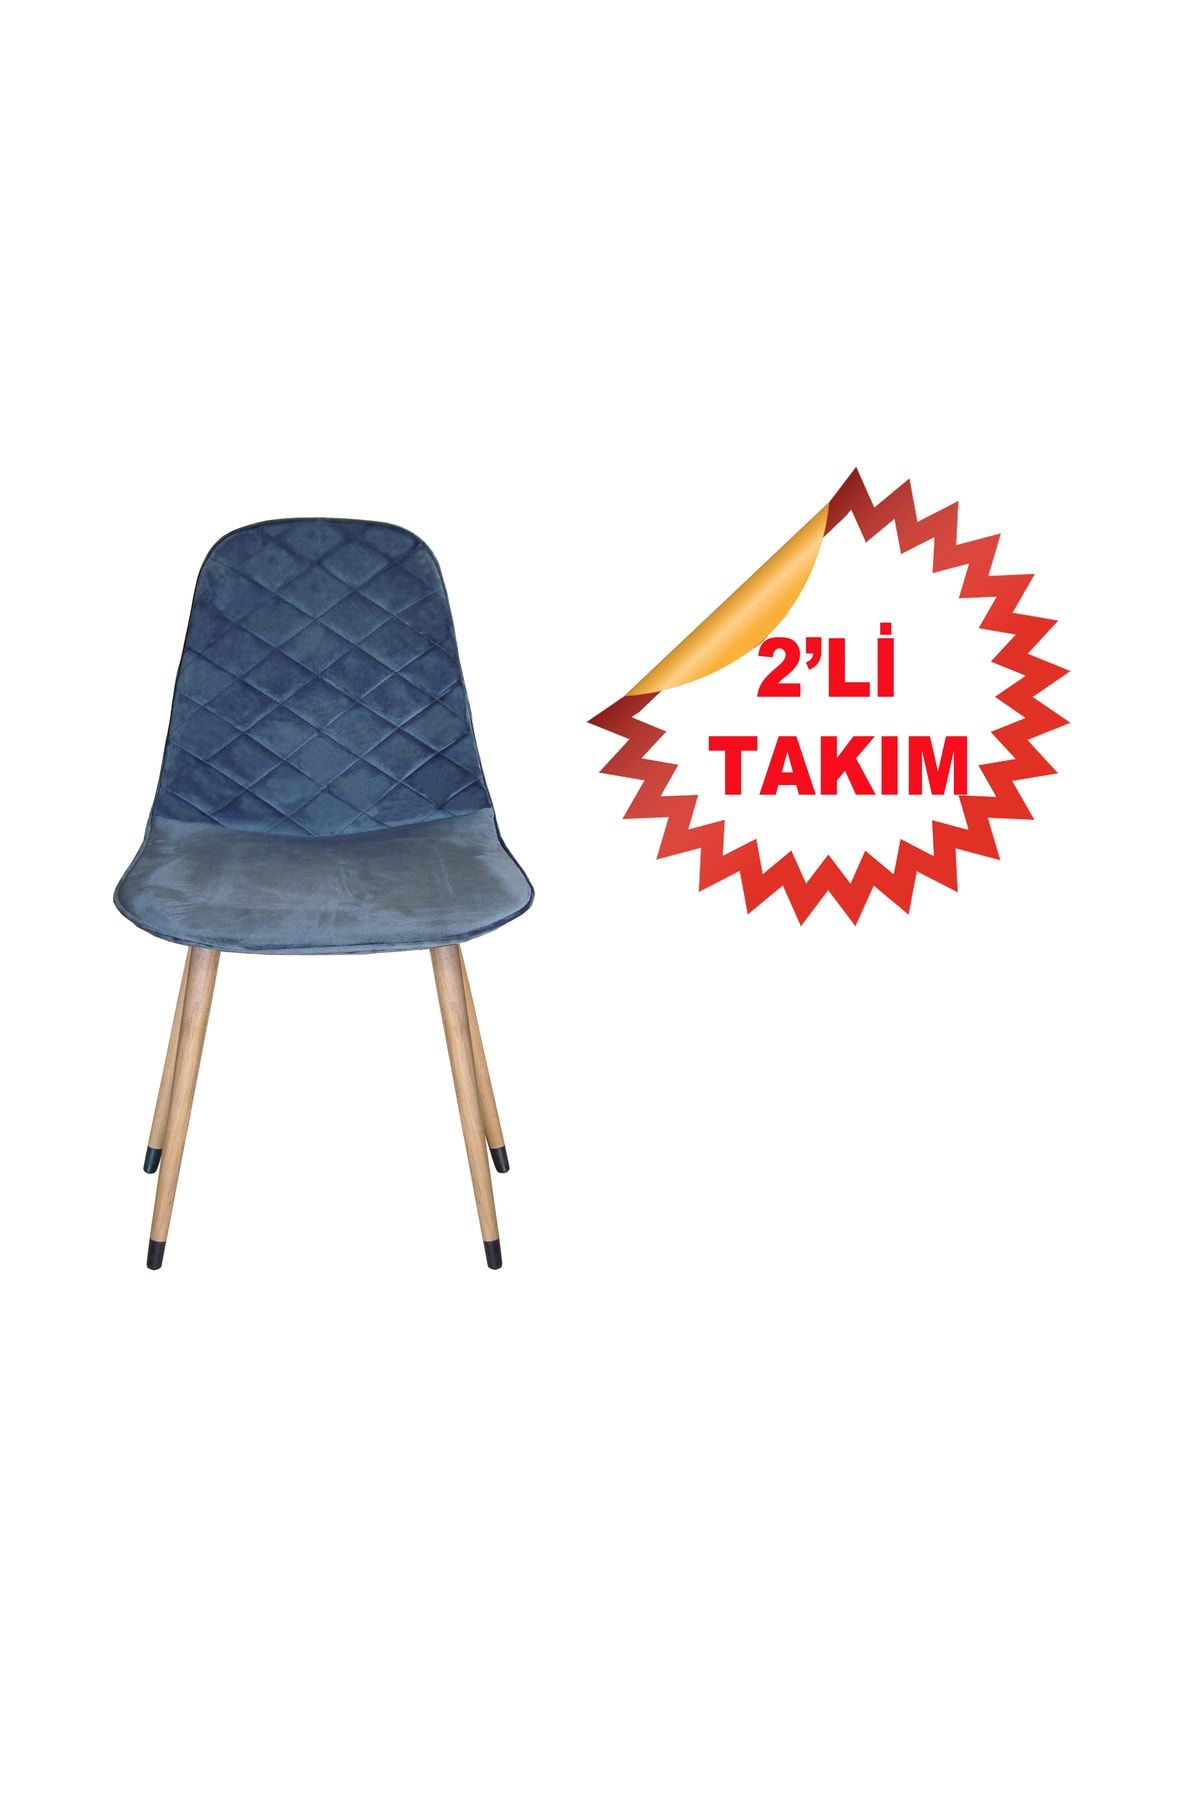 NETAKS Estelia Truva 2 Adet Ergonomik Ahşap Ayaklı Dikişli Kaliteli Sandalye 4 Renk Şeçeneği